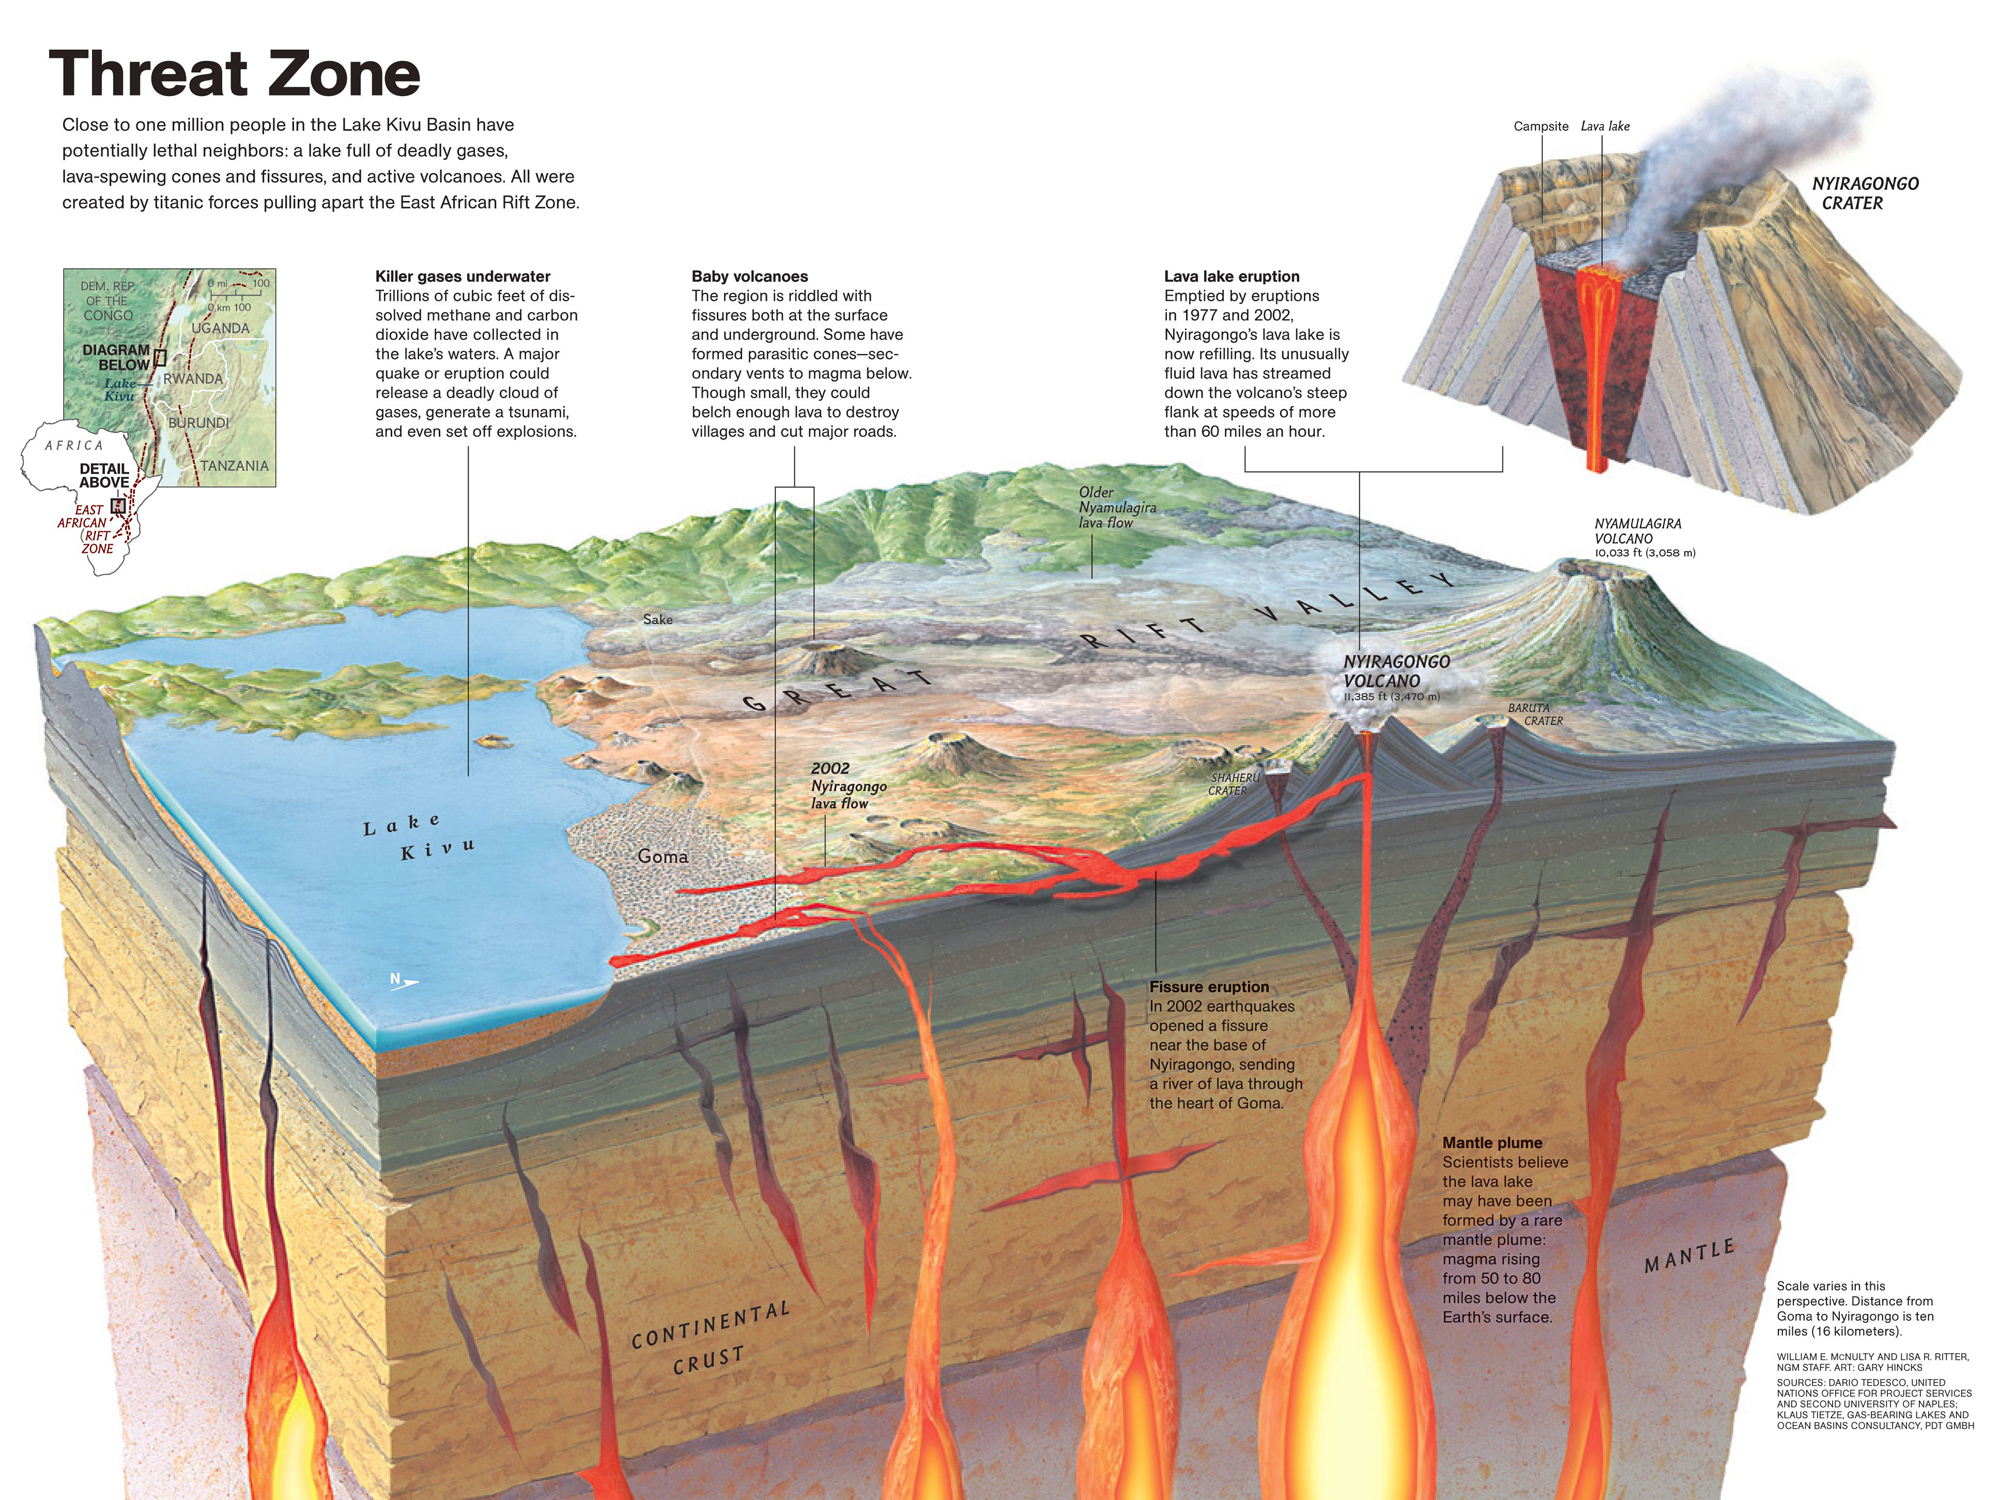 lava plateau diagram